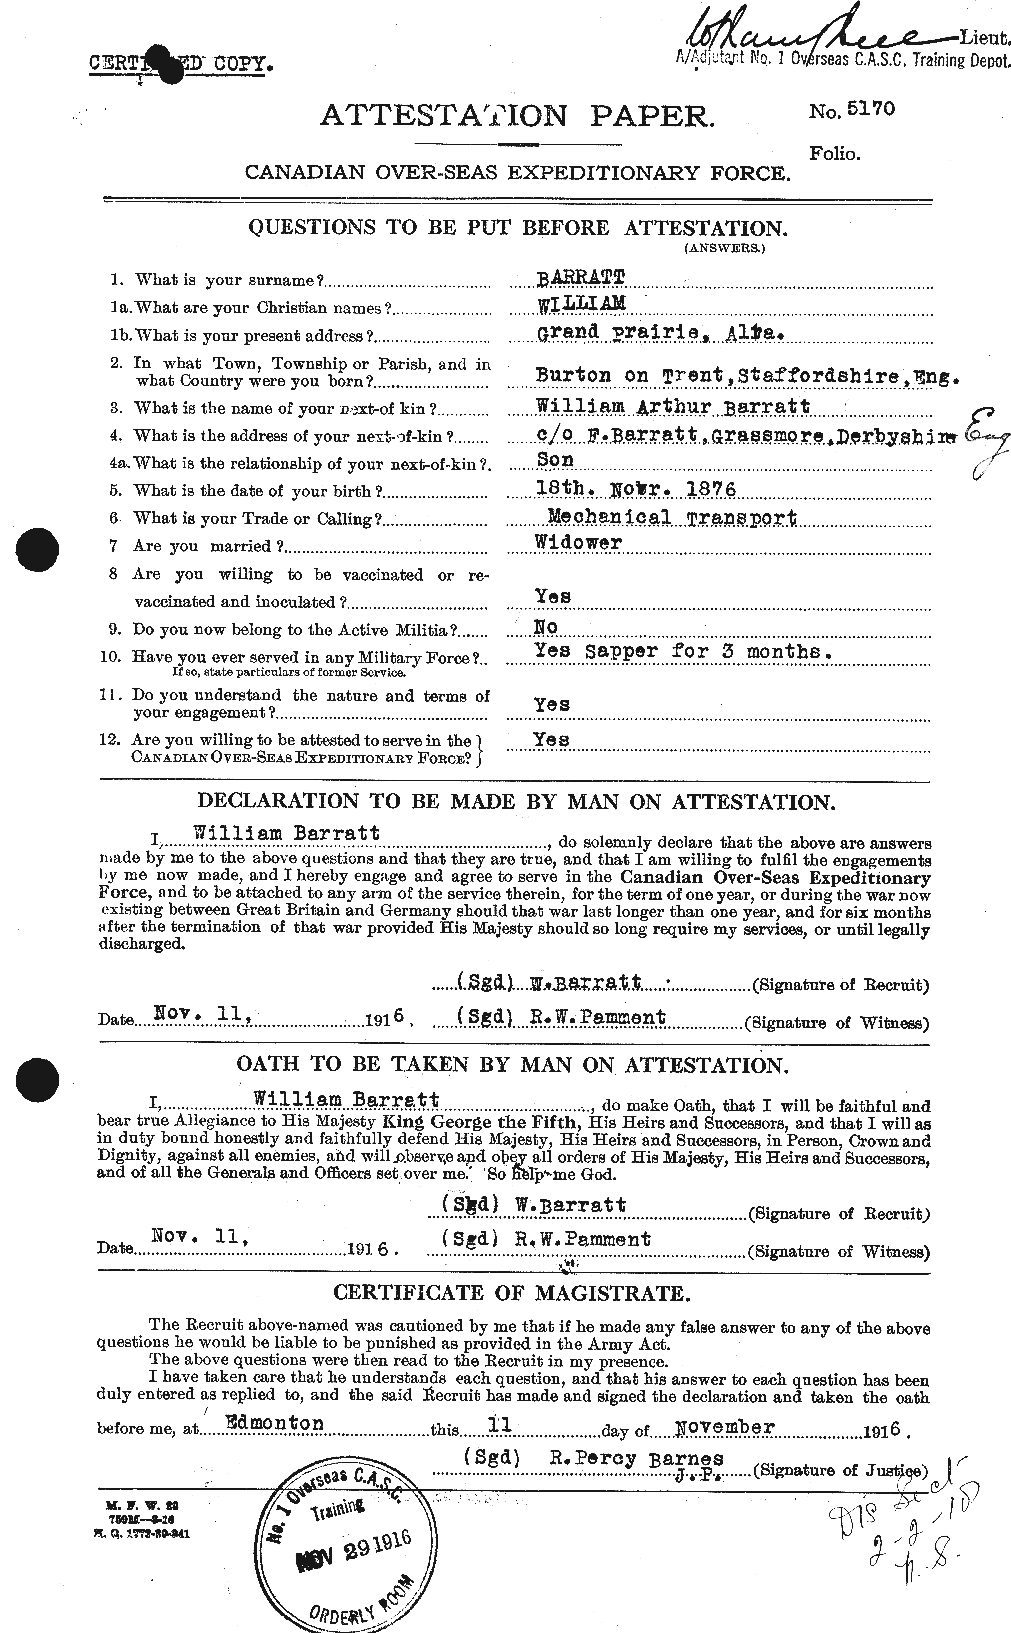 Dossiers du Personnel de la Première Guerre mondiale - CEC 221955a